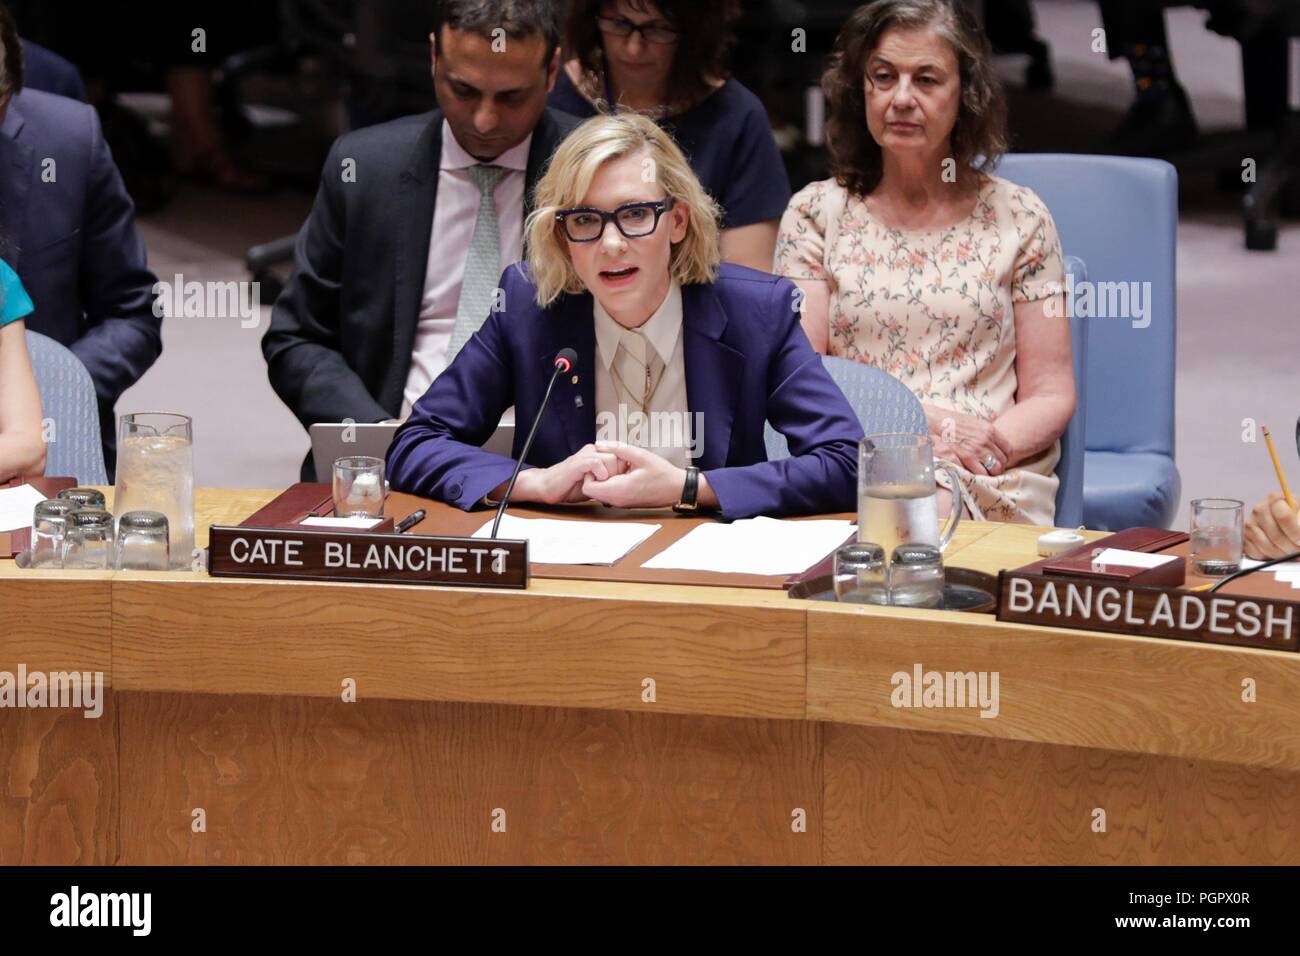 Nazioni Unite, New York, Stati Uniti d'America, 28 agosto 2018 - Cate Blanchett Academy-premiato attore e ambasciatore di benevolenza per l'Alto Commissario delle Nazioni Unite per i Rifugiati (ACNUR), affronta la riunione del Consiglio di sicurezza sulla situazione in Myanmar. La riunione commemora il primo anniversario dell inizio della crisi Rohingya in 2017 oggi presso la sede delle Nazioni Unite a New York City. Foto: Luiz Rampelotto/EuropaNewswire | Utilizzo di tutto il mondo Foto Stock